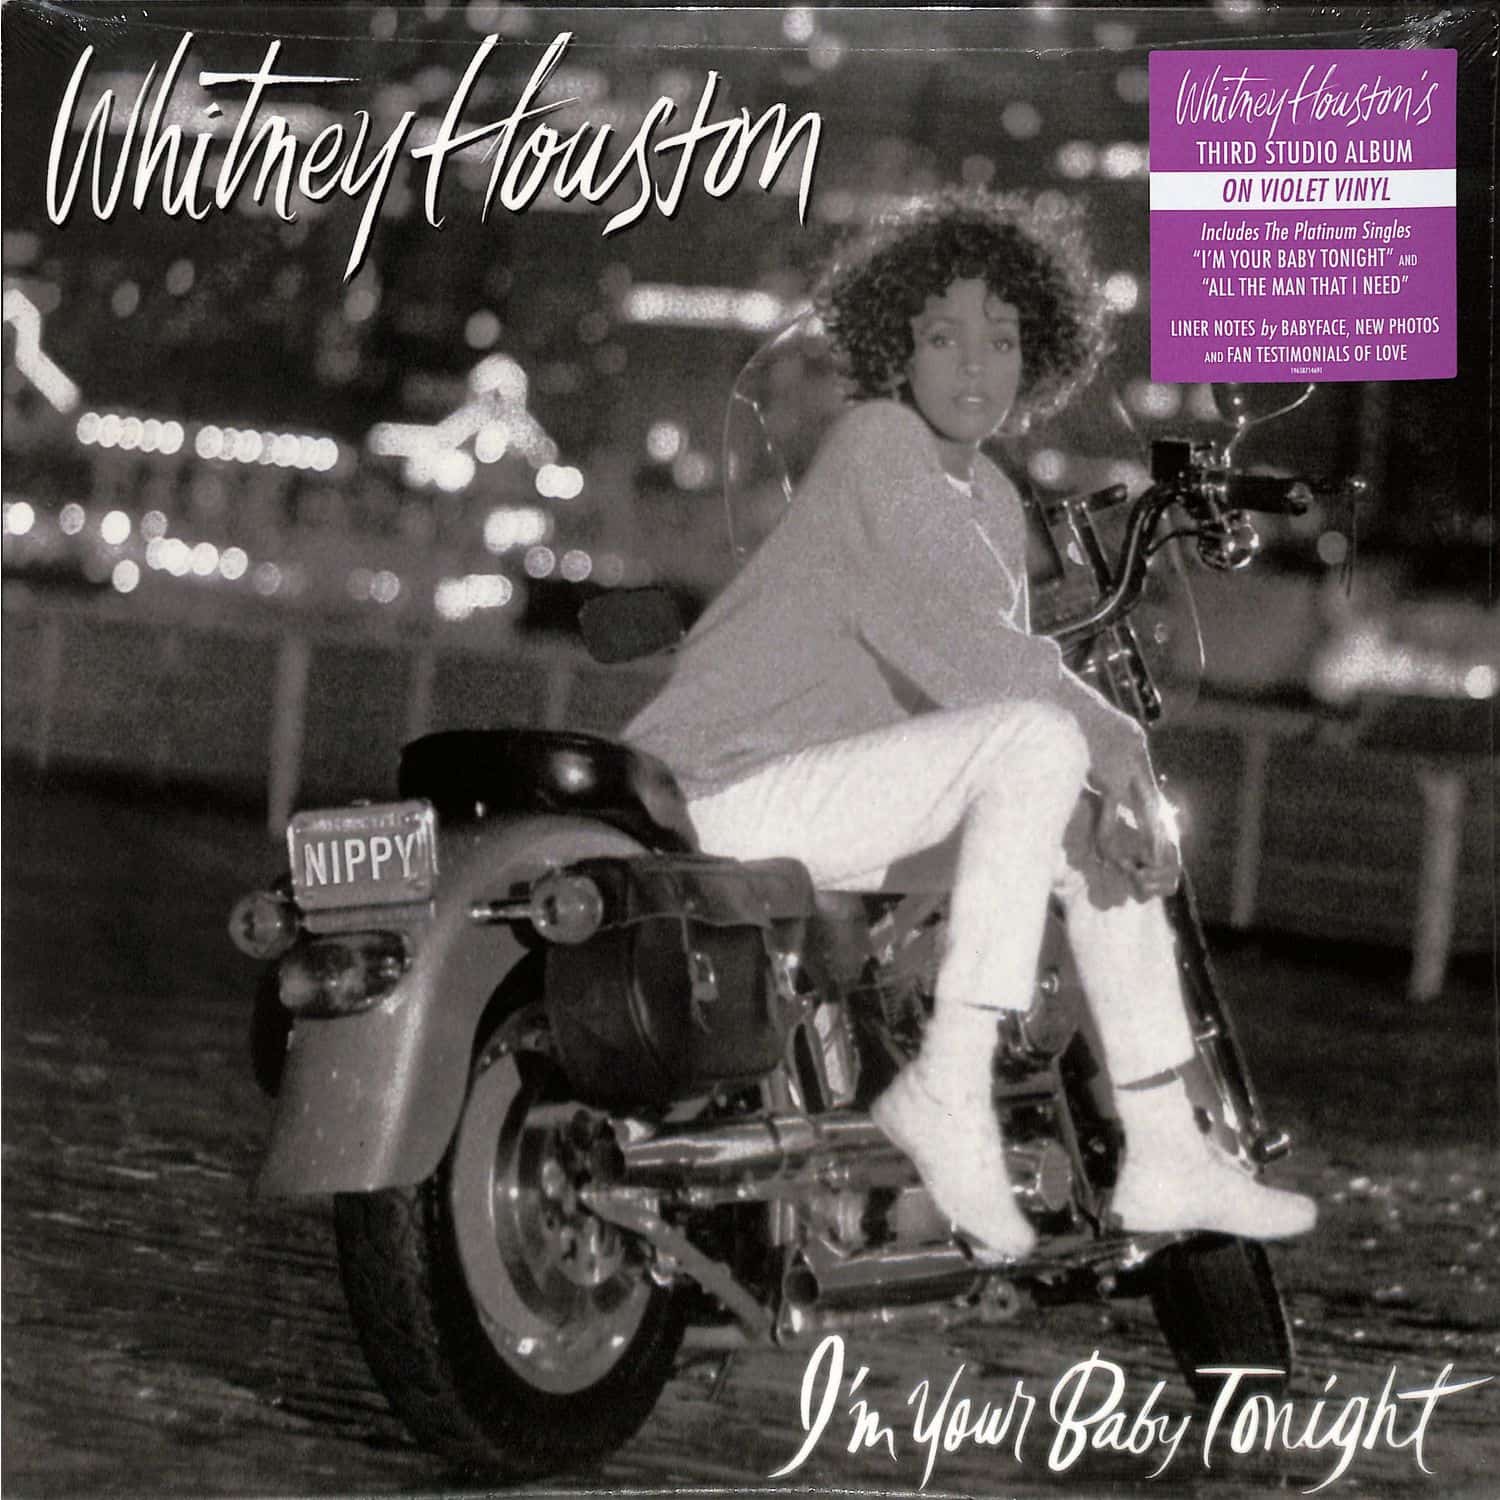 Whitney Houston - I M YOUR BABY TONIGHT 